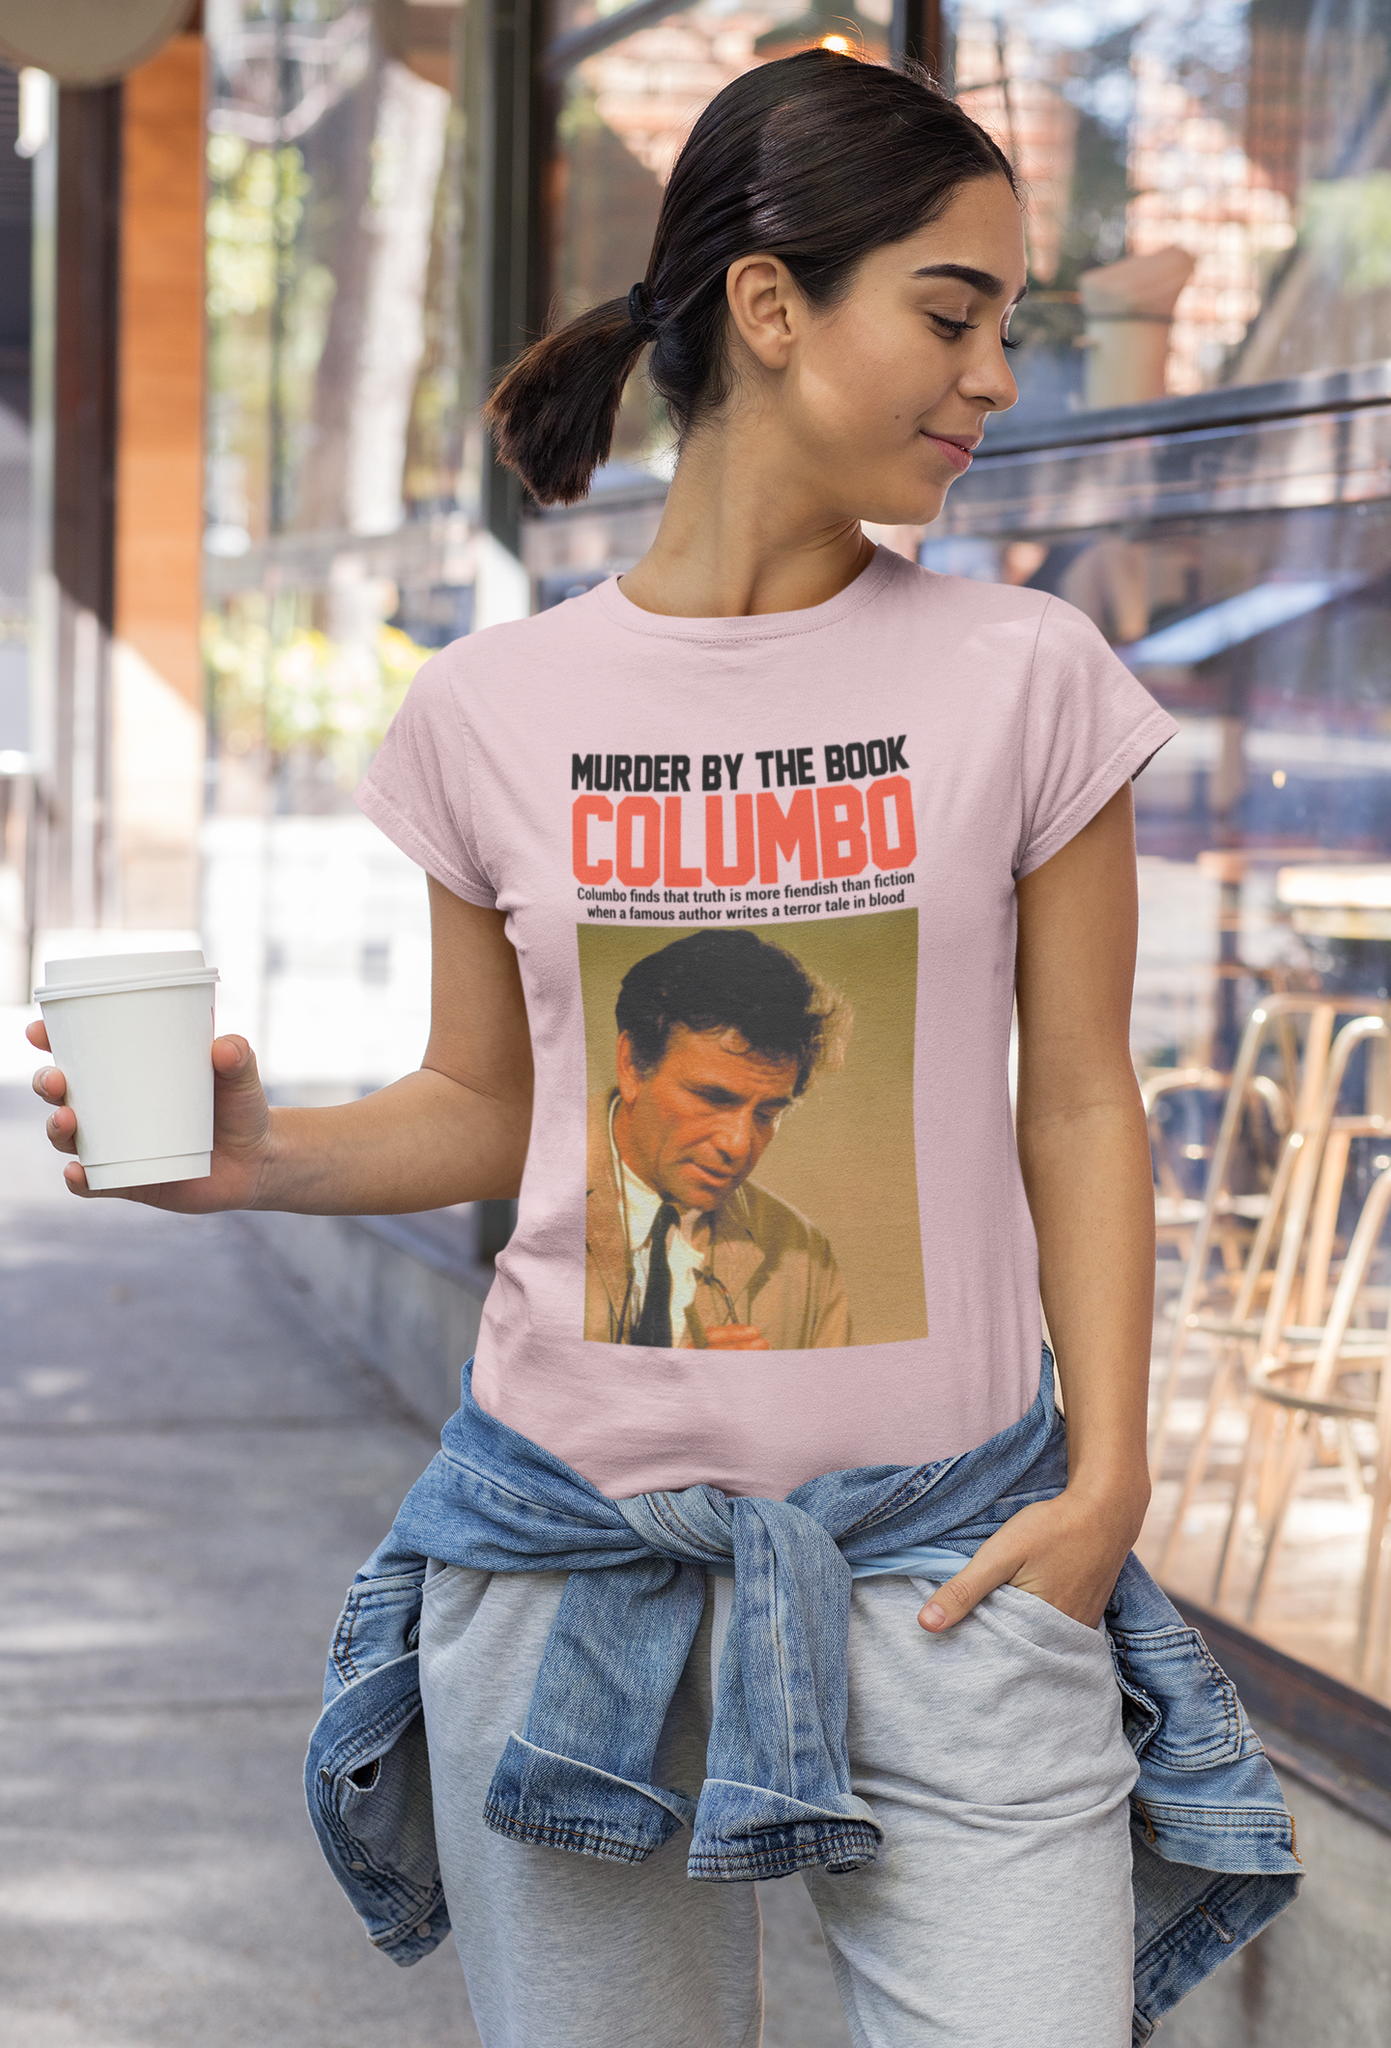 Columbo Drama T Shirt, Columbo Tshirt, Murder By The Book Columbo T Shirts